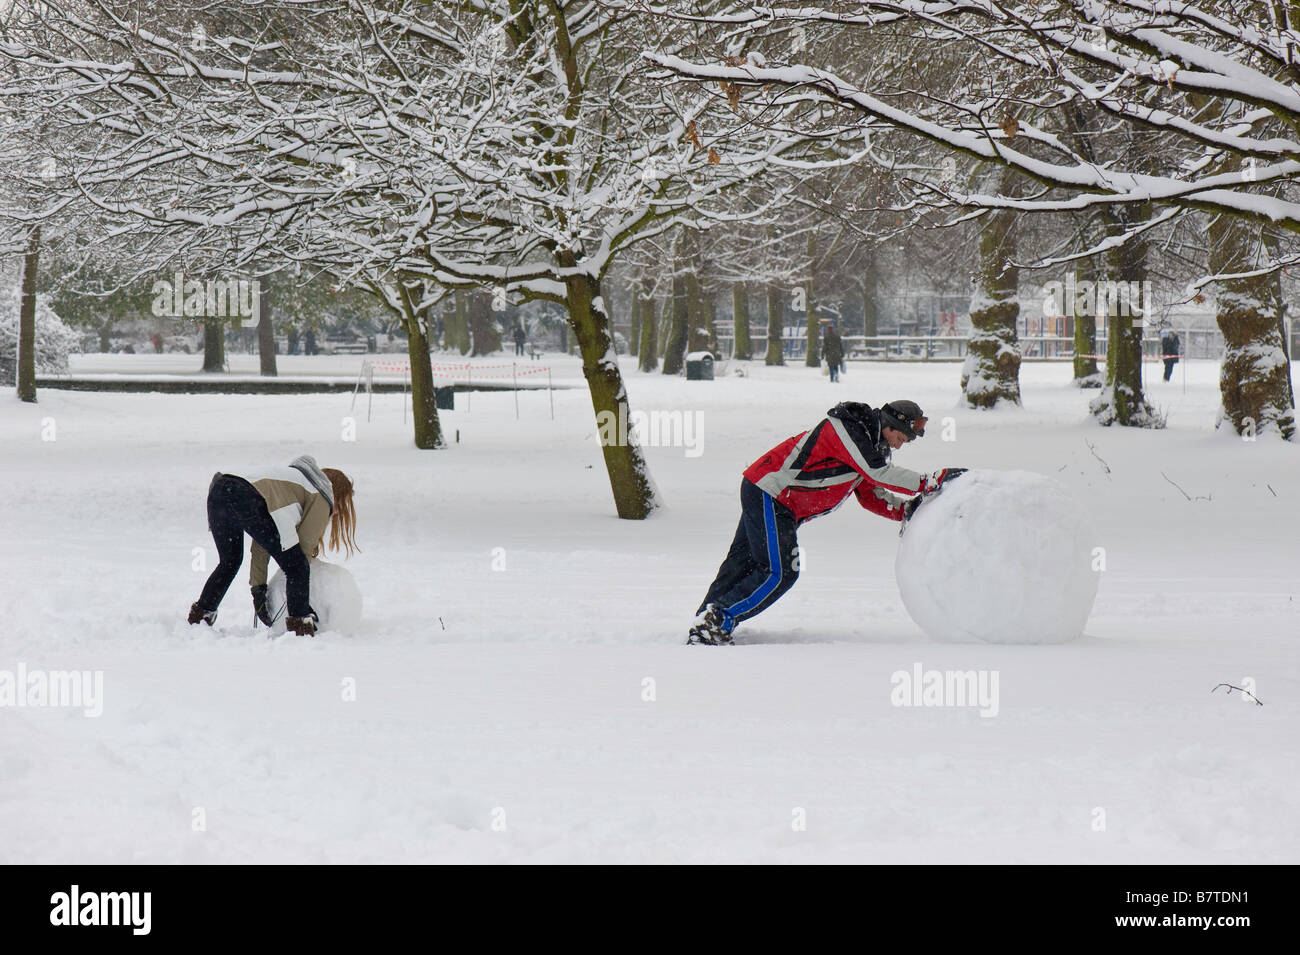 Junge Menschen spielen in Walpole Park bedeckt im Februar Schnee Ealing London W5 Vereinigtes Königreich Stockfoto